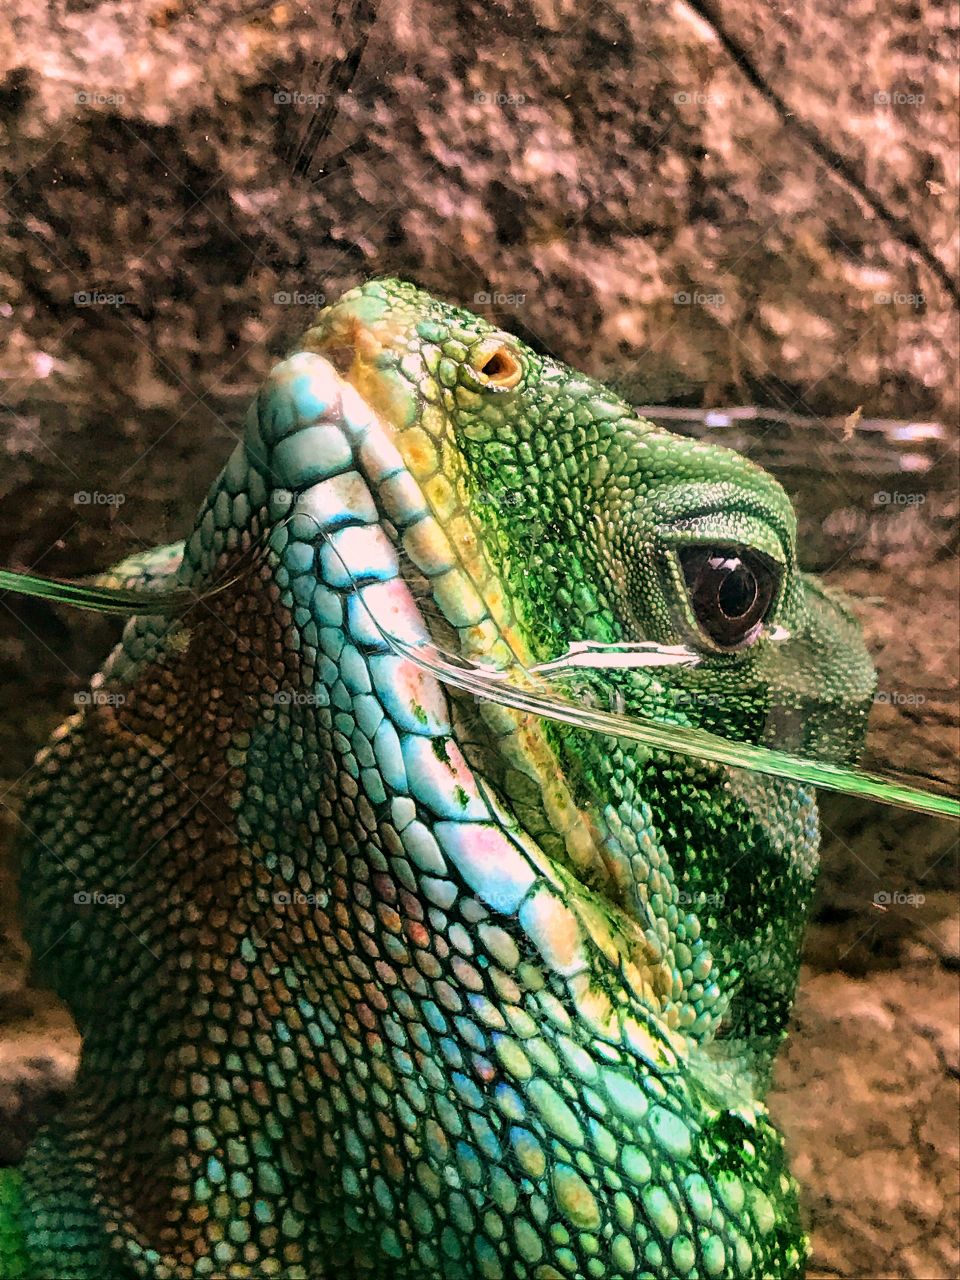 Lizard in a tank 